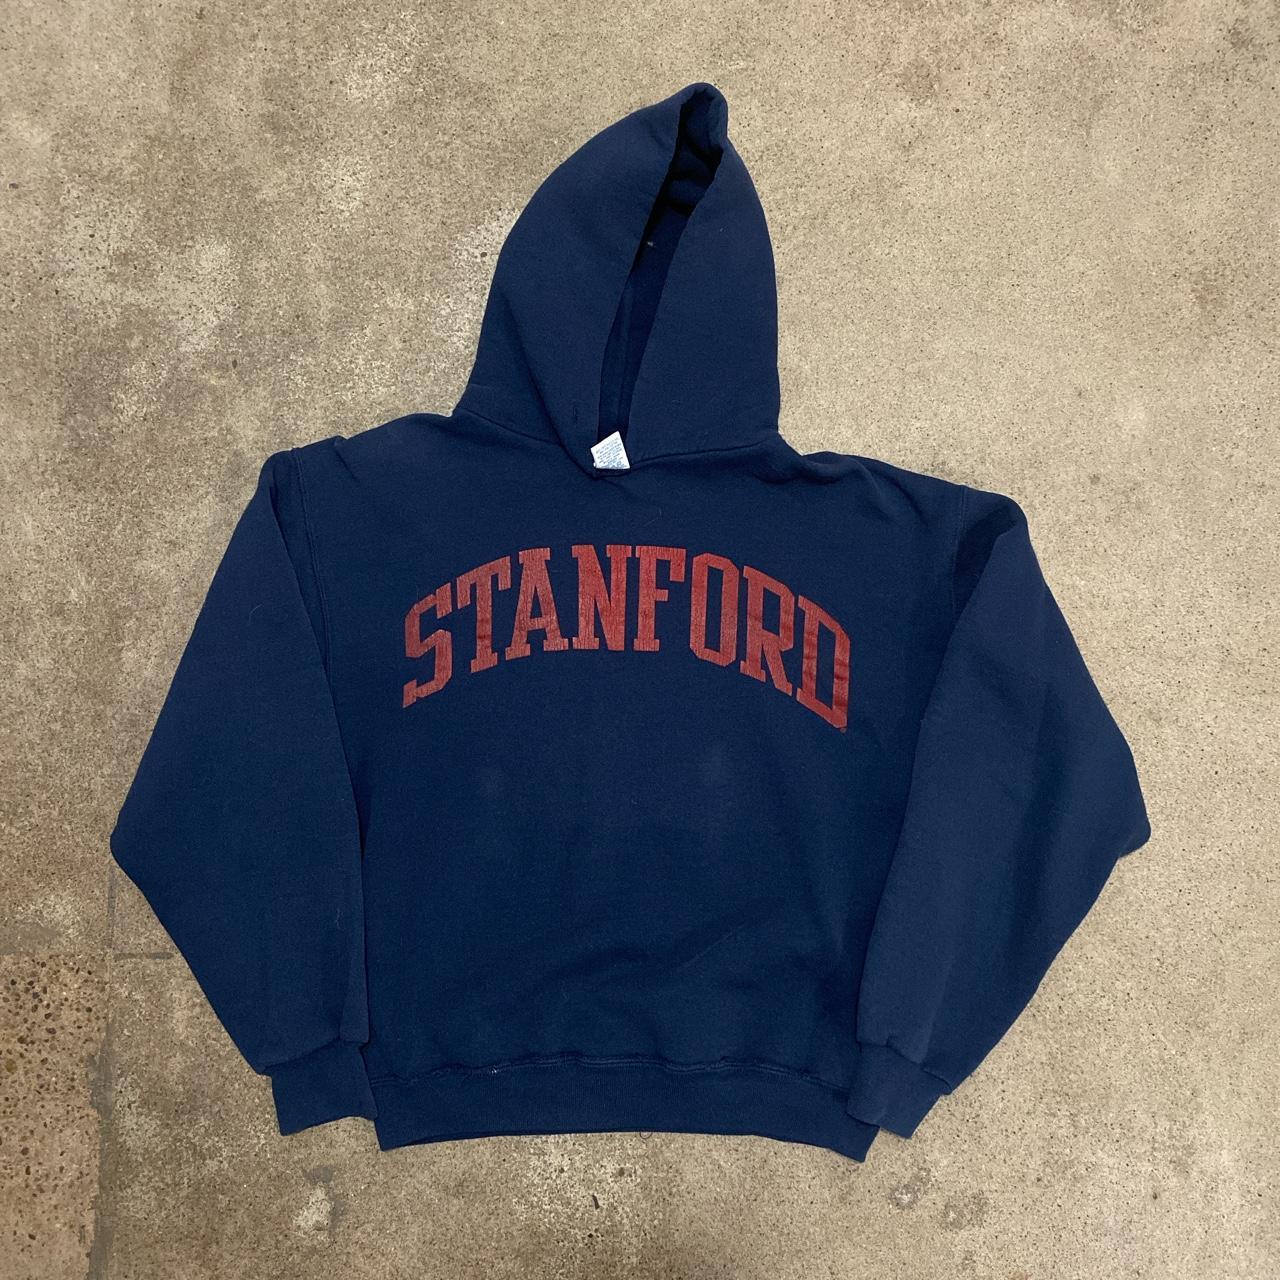 Vintage Russell Athletic Stanford Hoodie 90s Good... - Depop